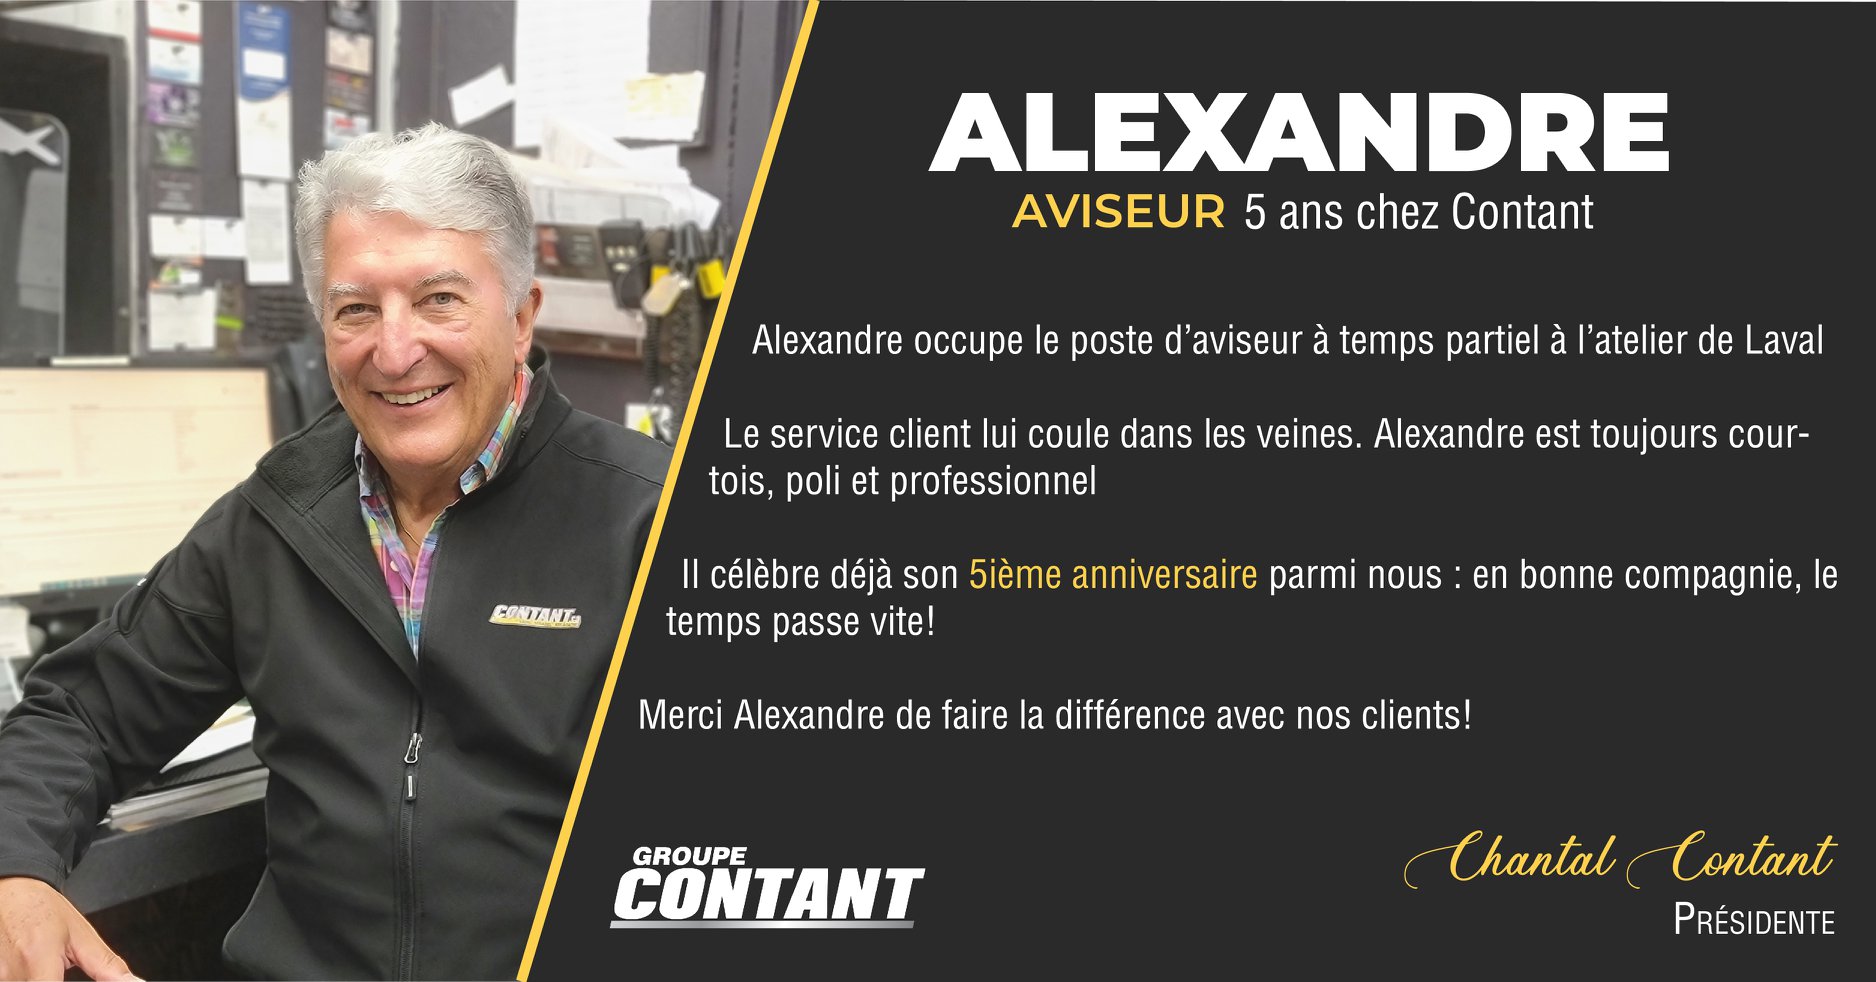 5 ans chez Contant pour Alexandre!